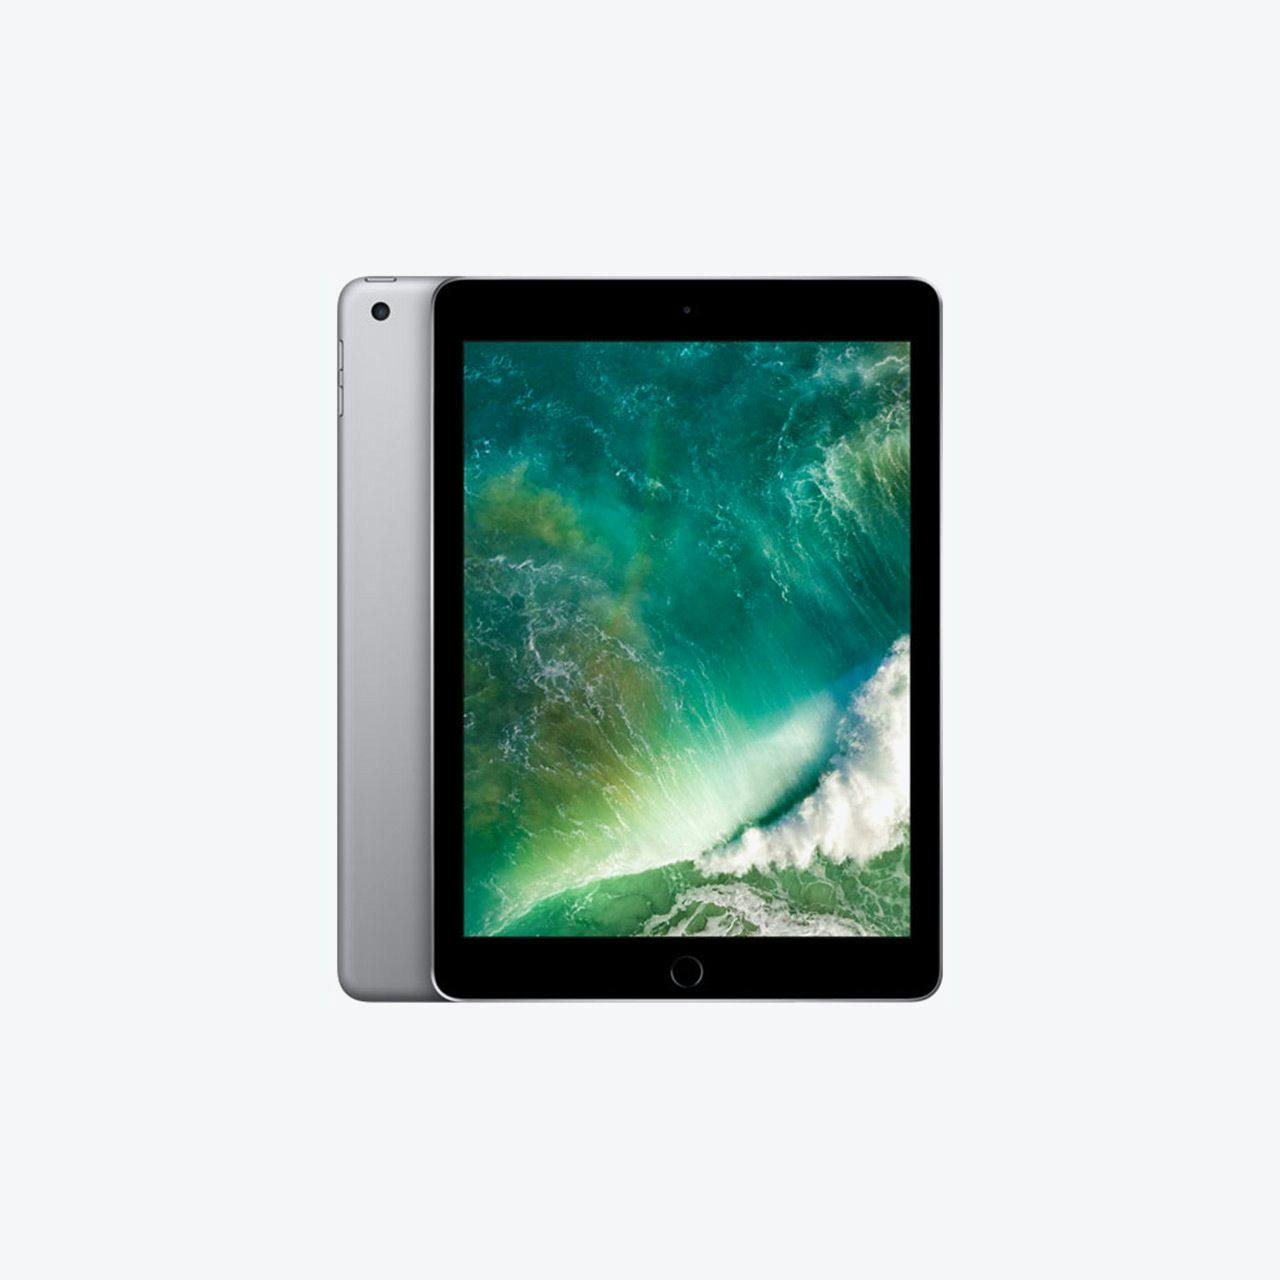 Image of iPad 5th Generation.